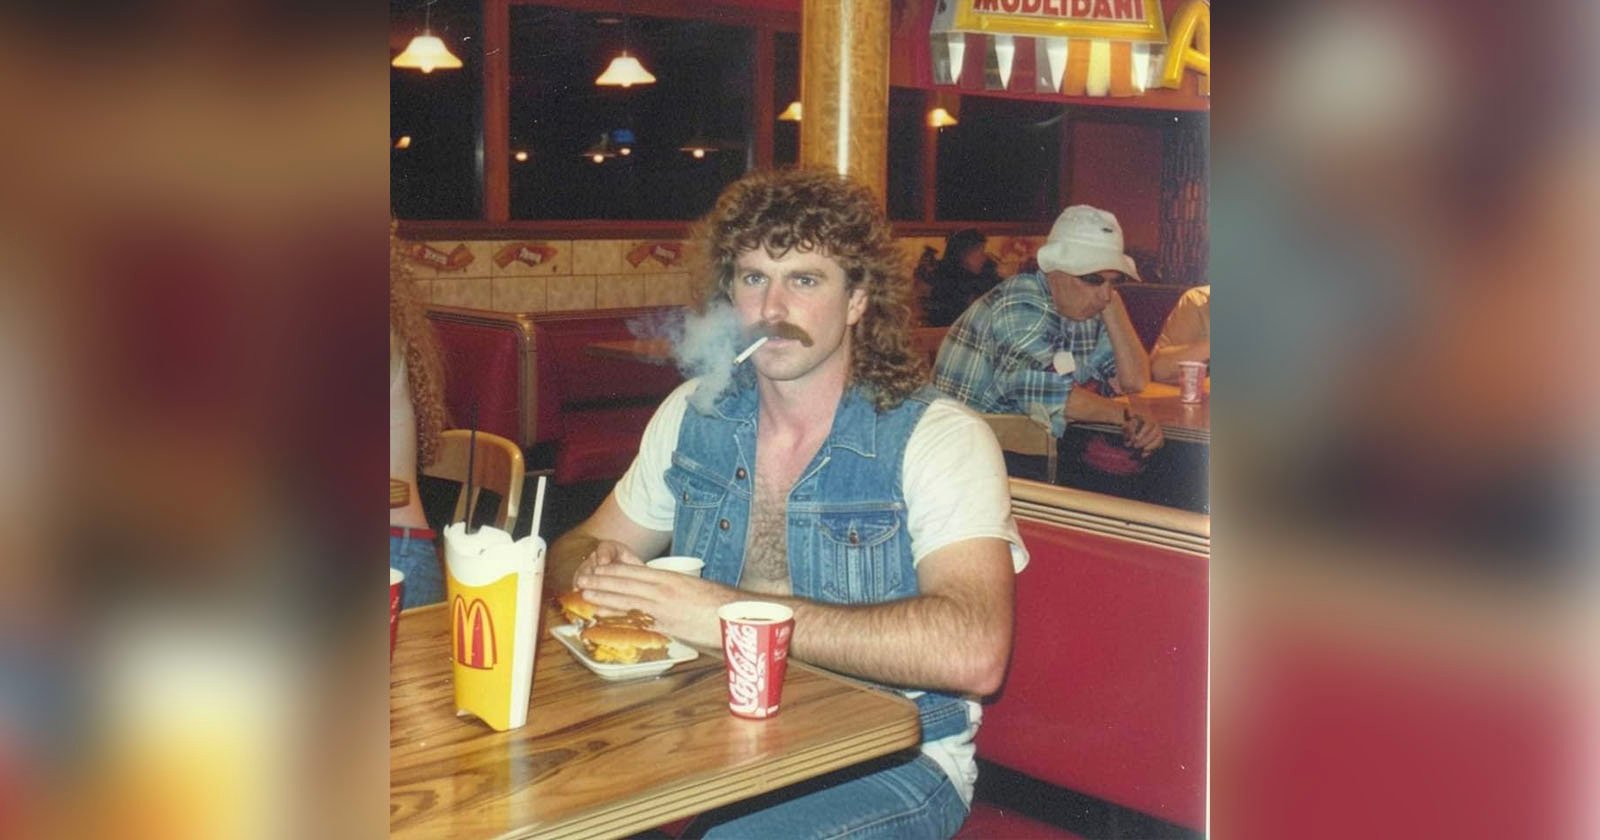  viral photo taken 1989 man smoking mcdonald 